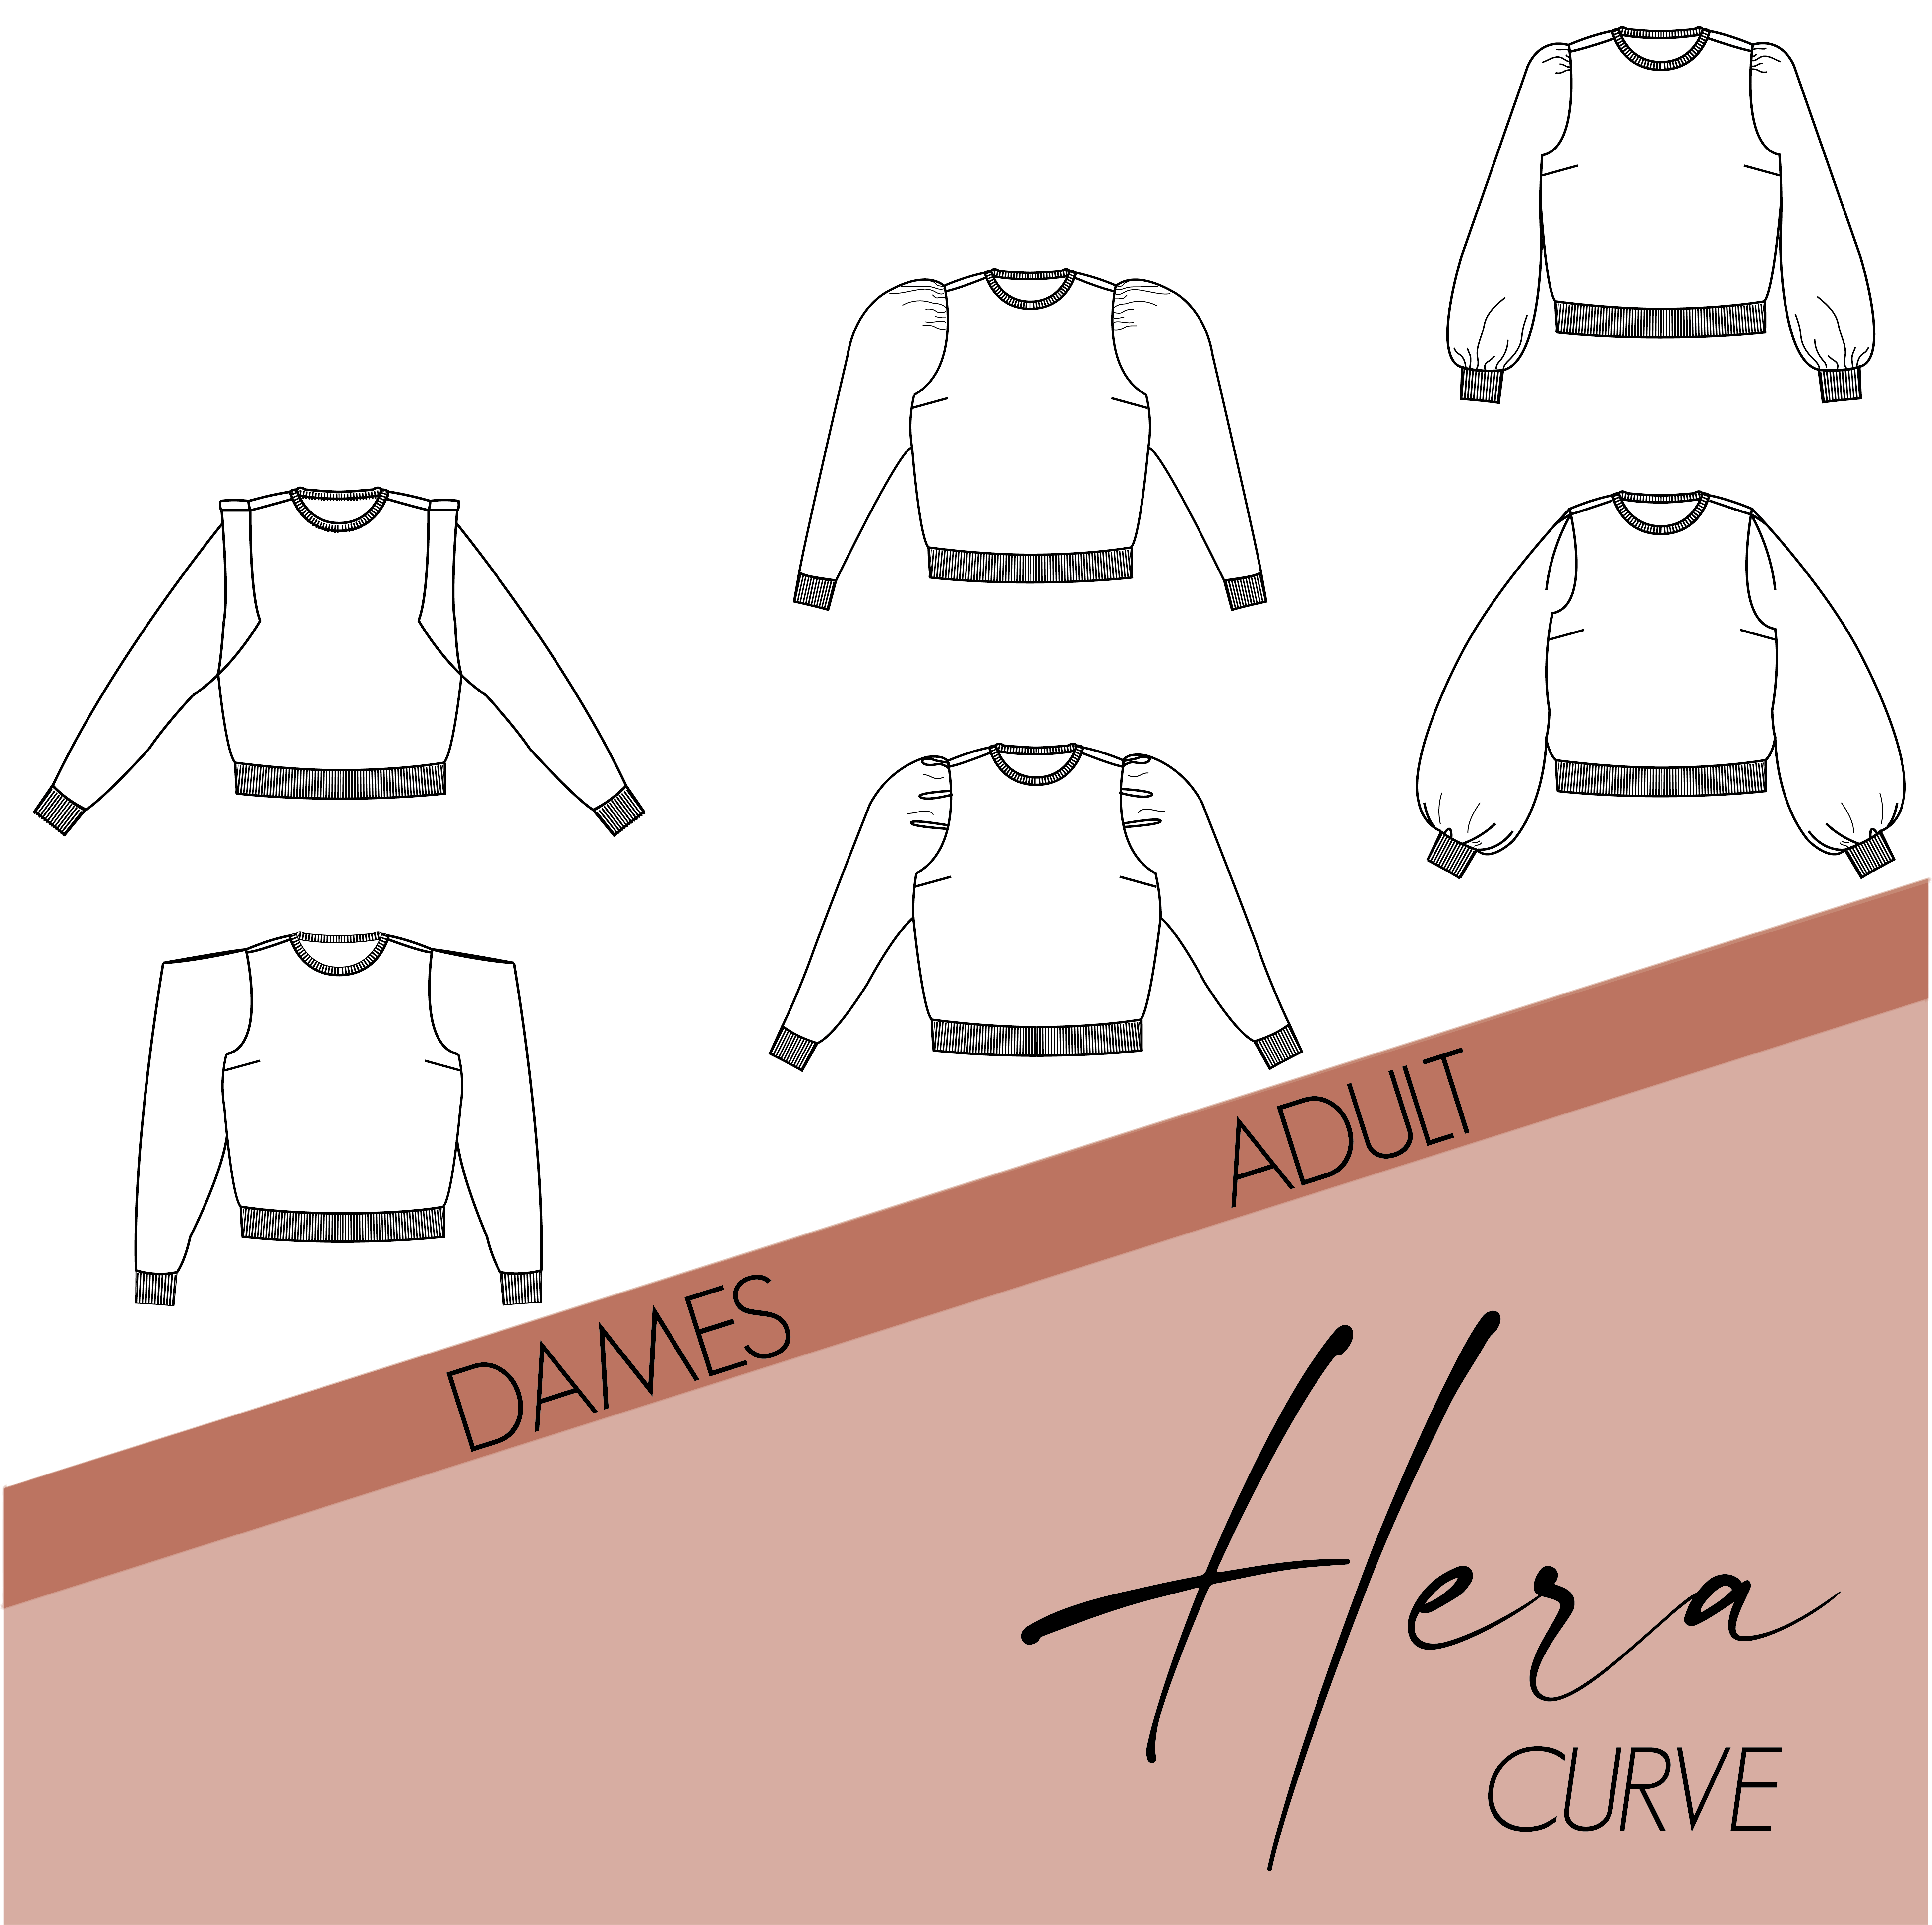 Hera curve - dames